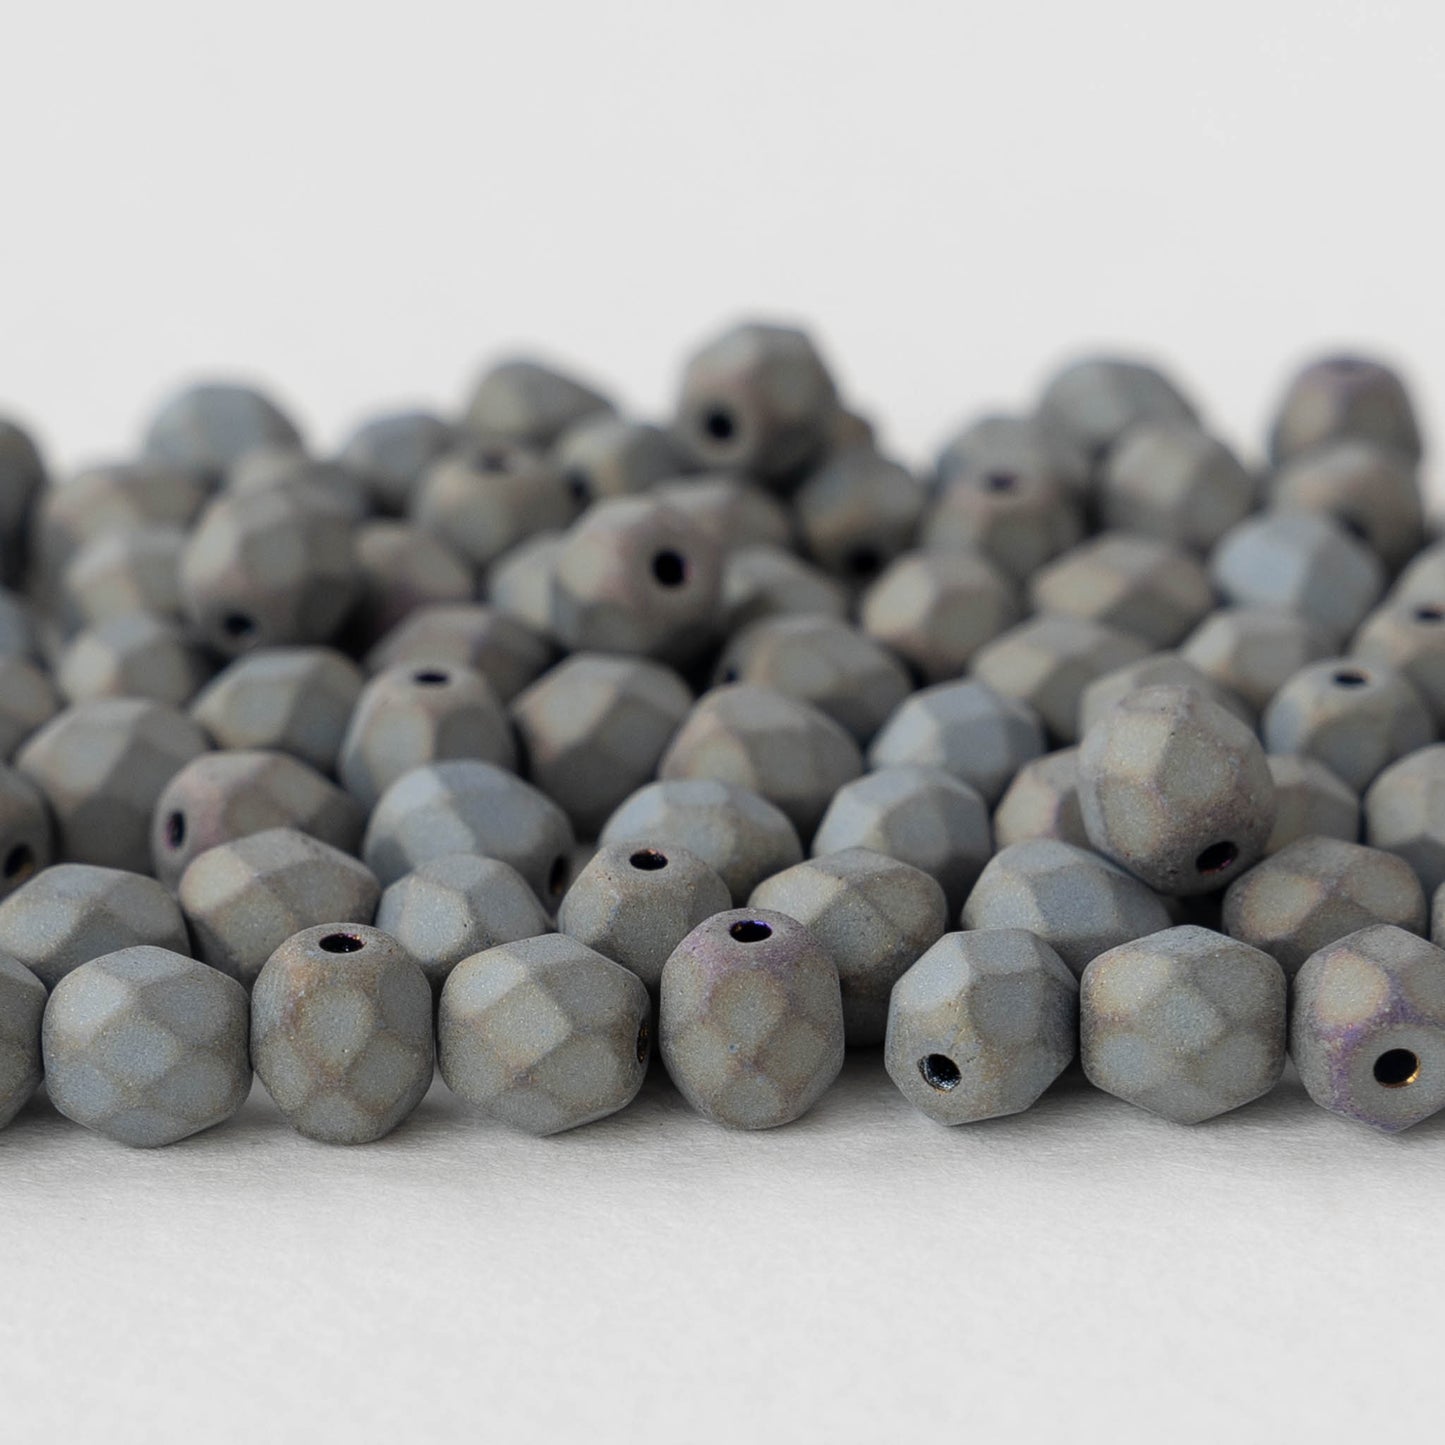 6mm Round Beads - Matte Gray - 50 beads